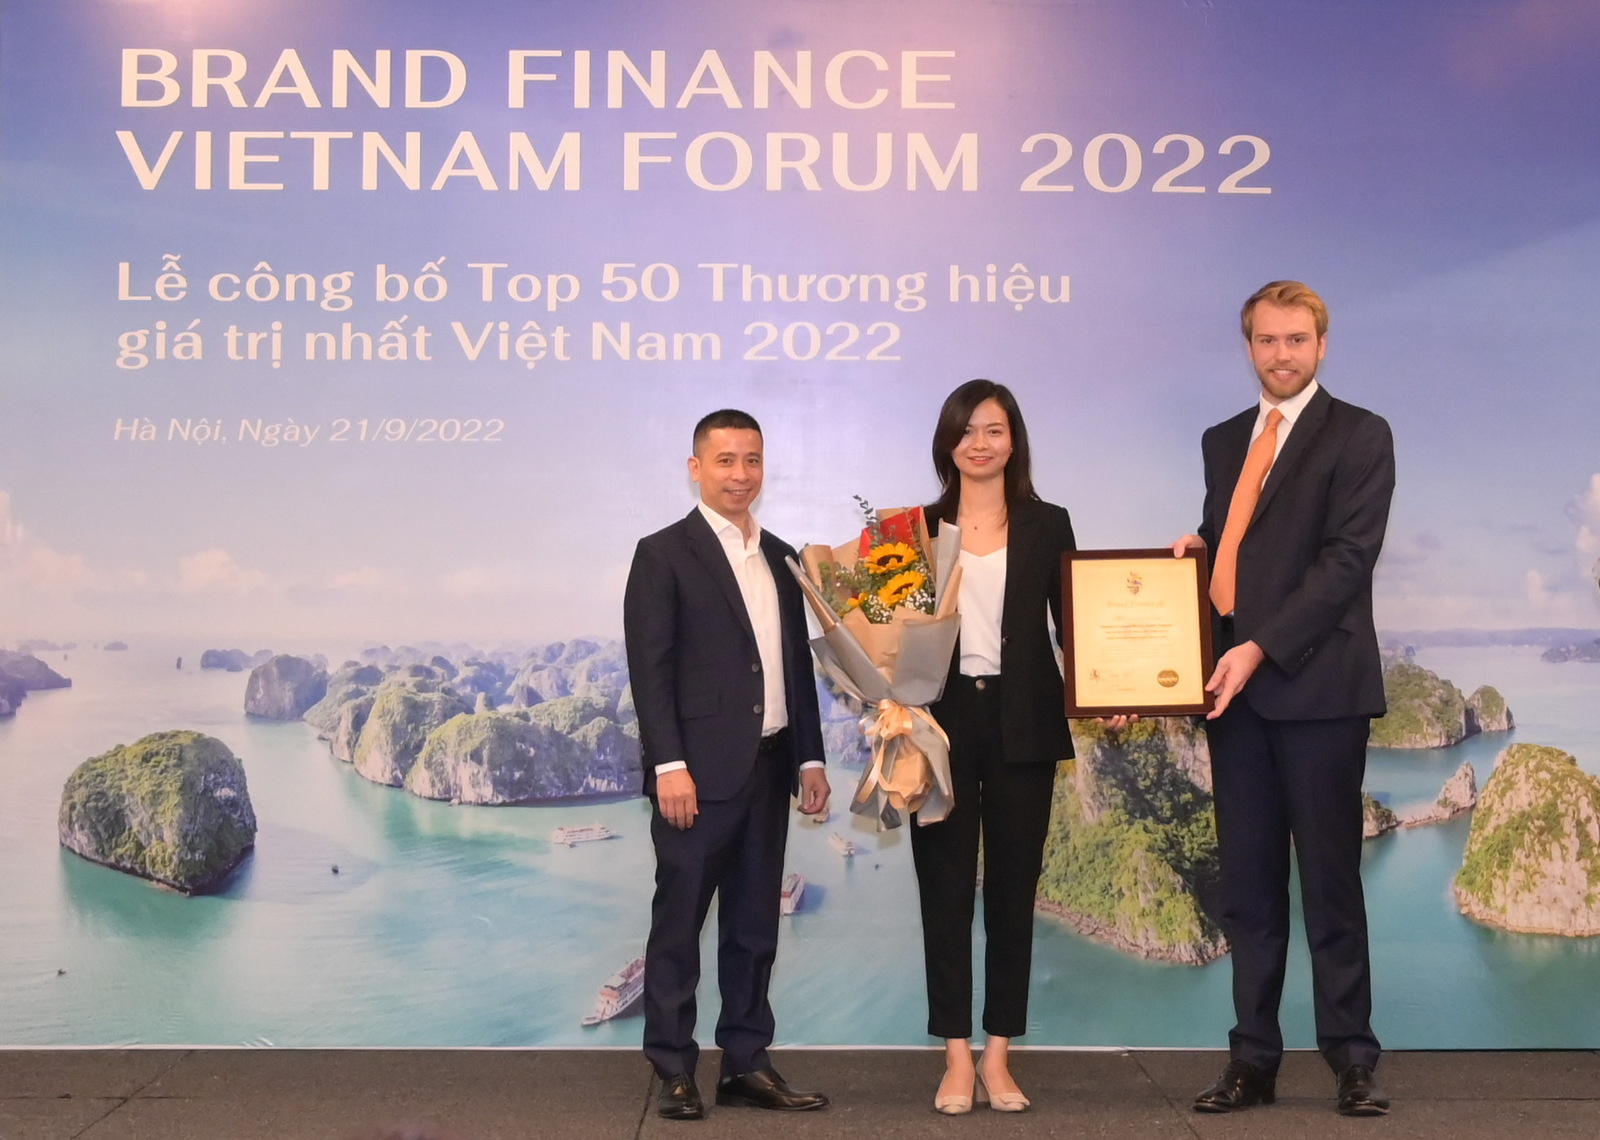 2 tập đoàn viễn thông chiếm vị trí nhất nhì của 50 thương hiệu giá trị nhất Việt Nam - Anh 02 6